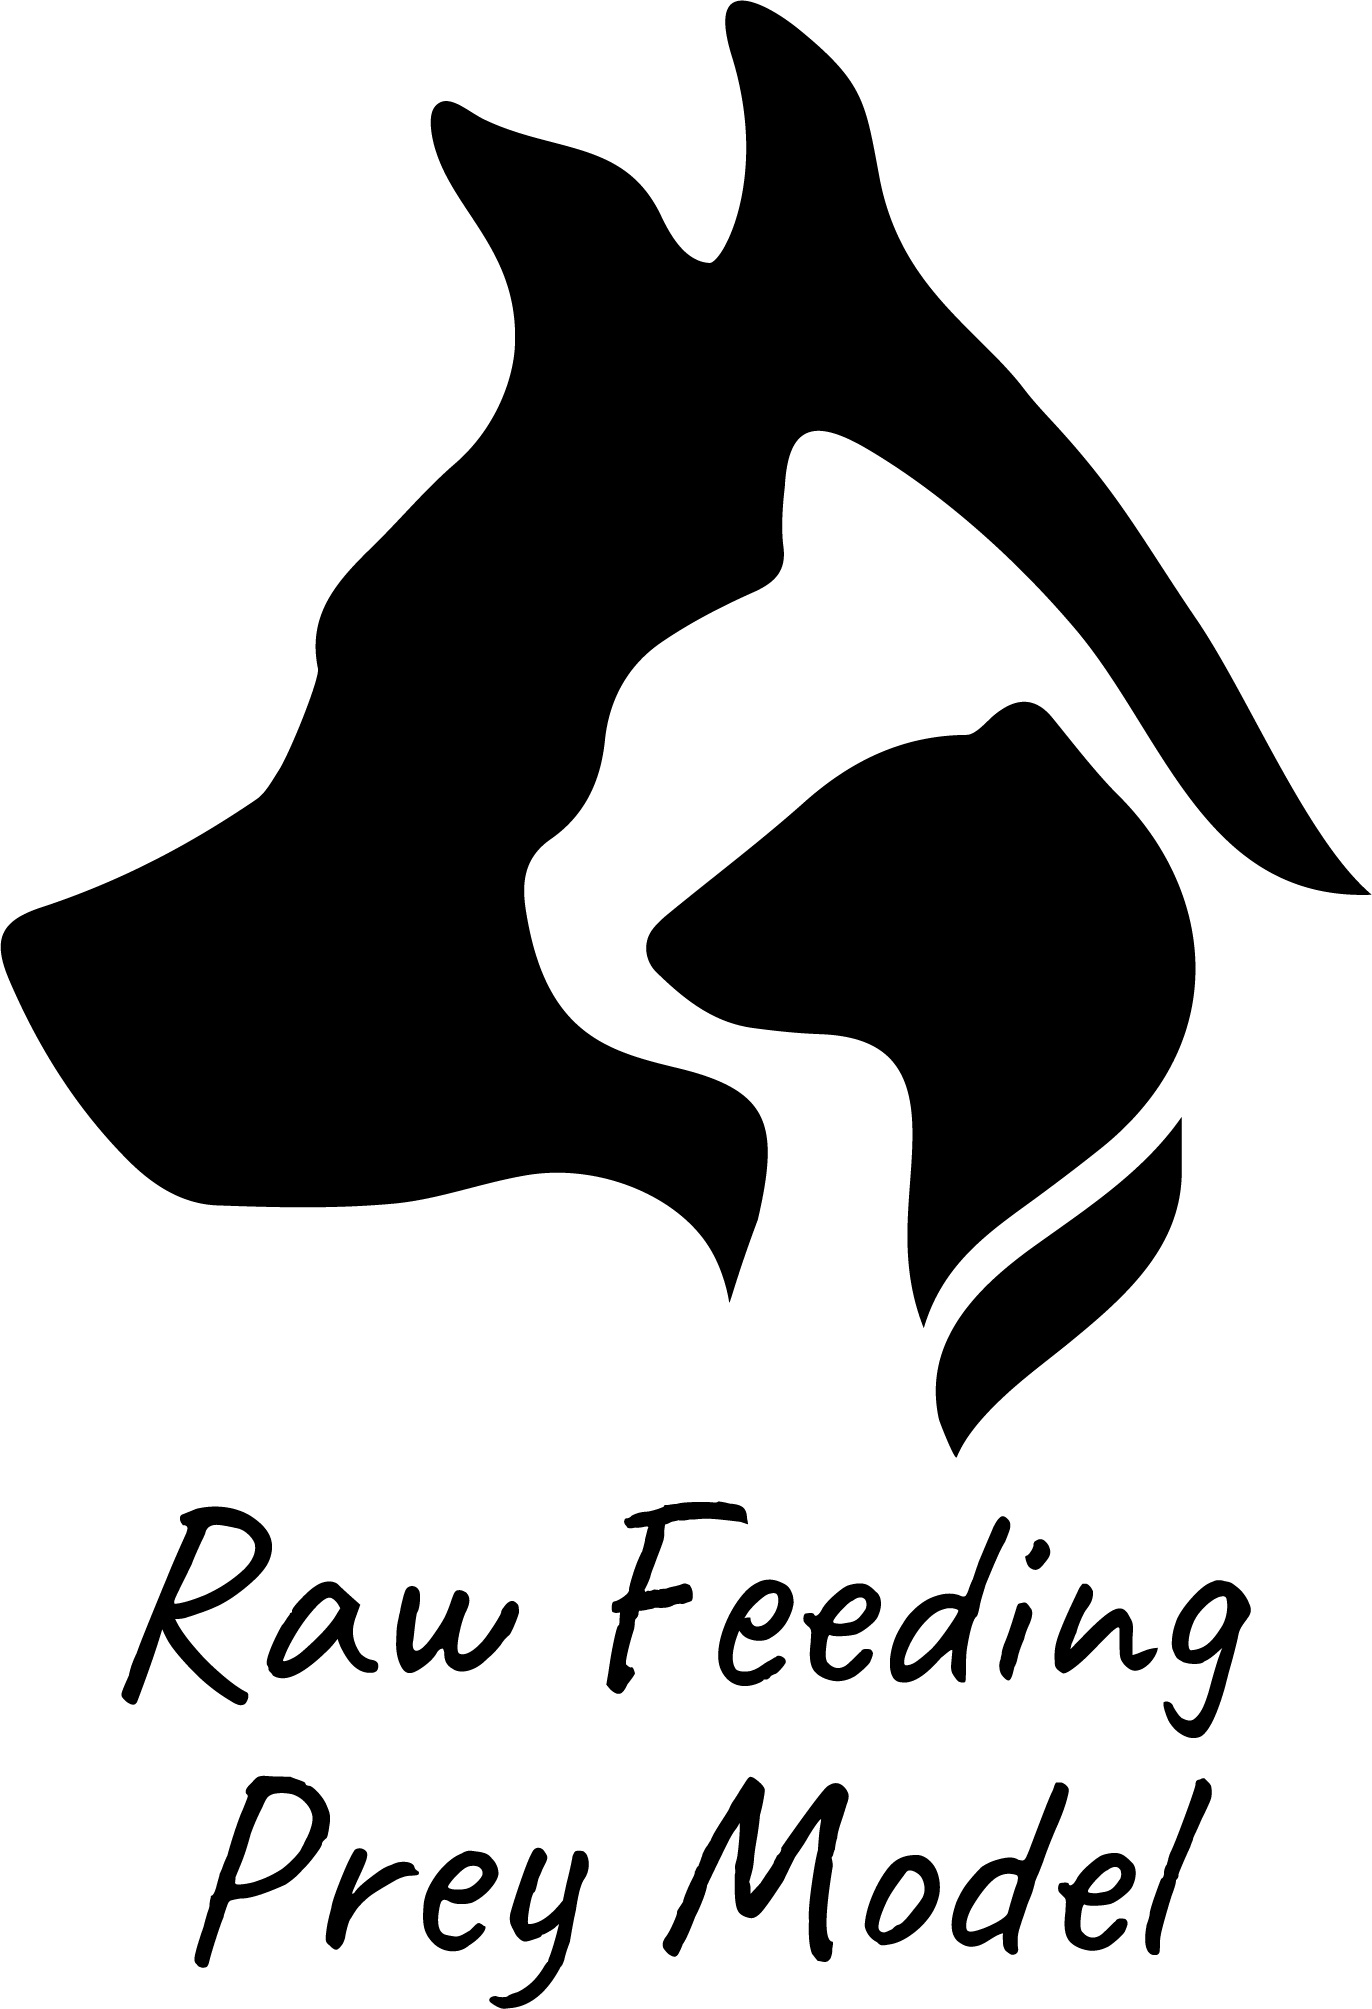 Association Raw Feeding - Prey Model